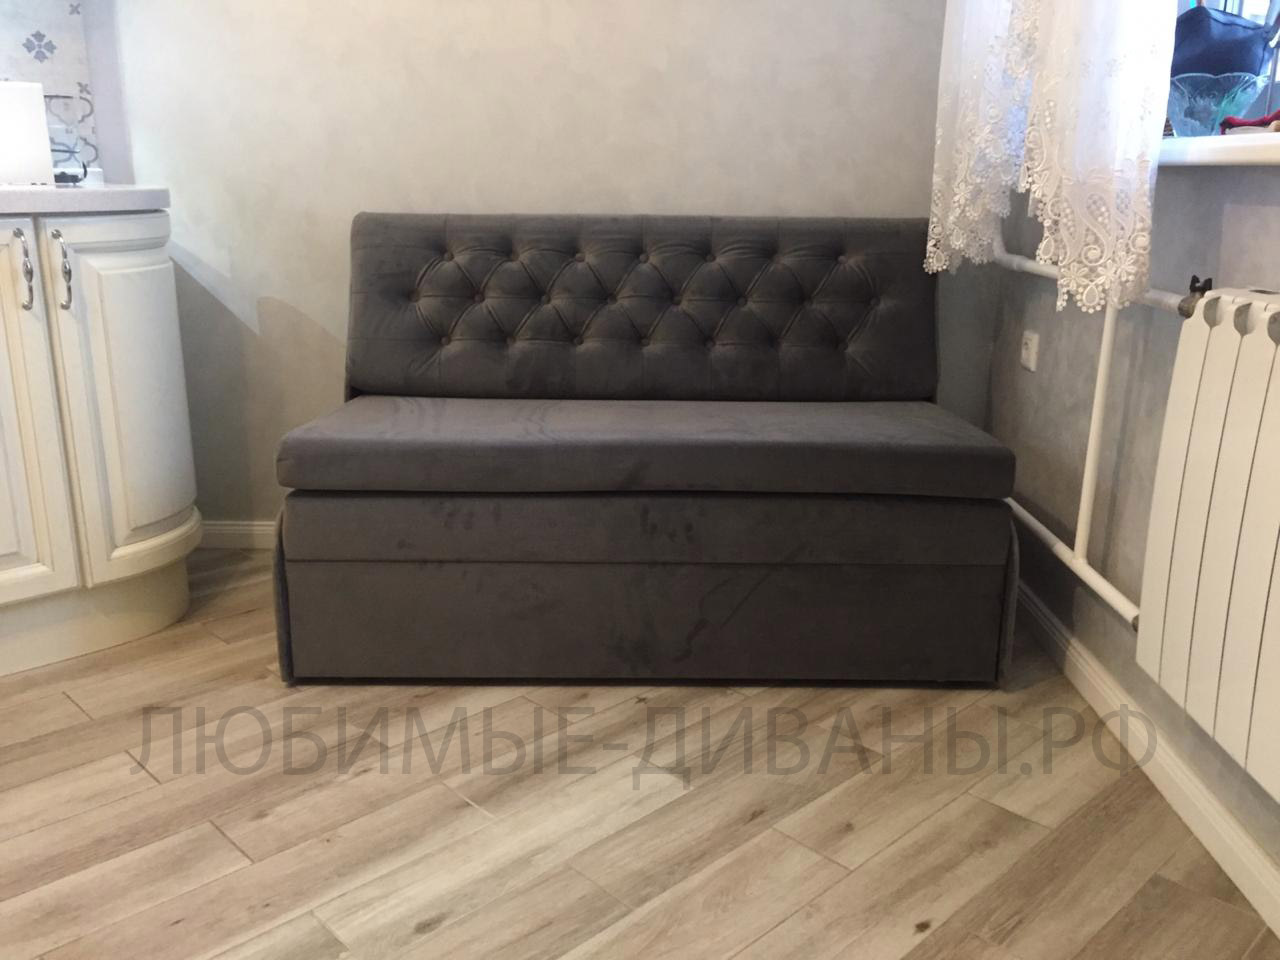 Малогабаритный диван Танго-4 Д-125 с каретной стяжкой для небольших комнат и кухни